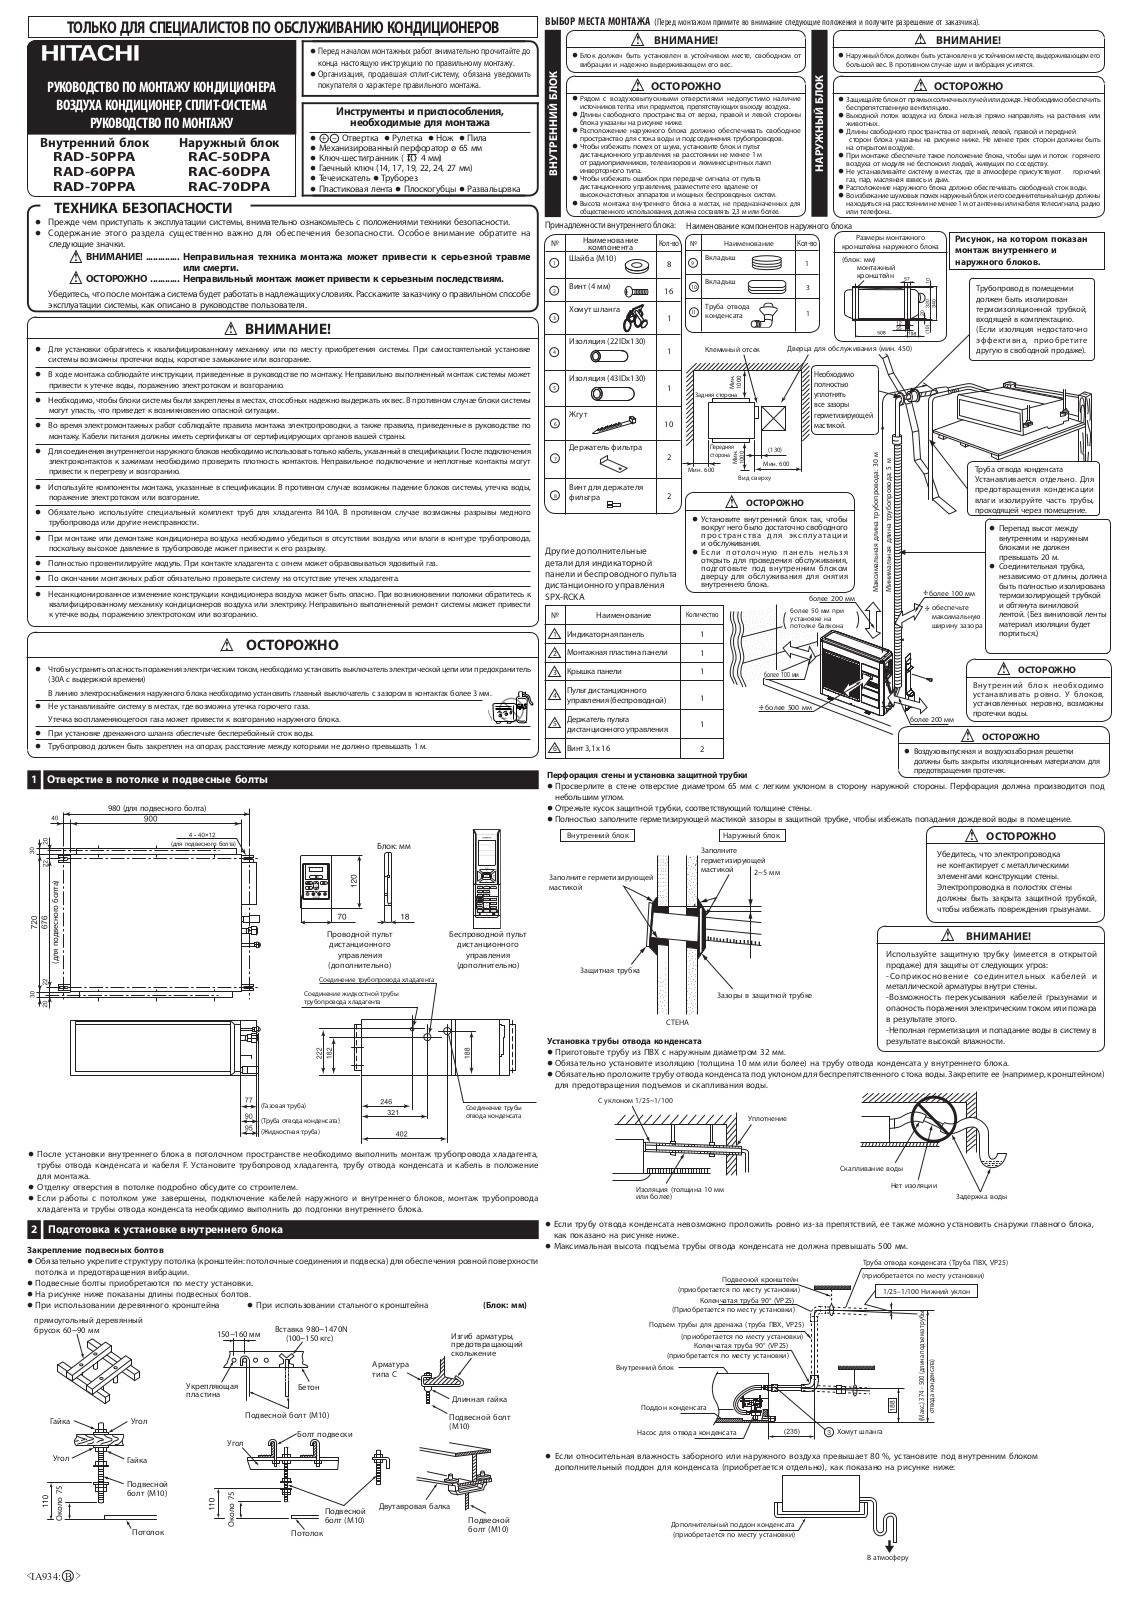 Hitachi RAD-50PPA, RAD-60PPA, RAD-70PPA, RAC-50DPA, RAC-60DPA Installation manual